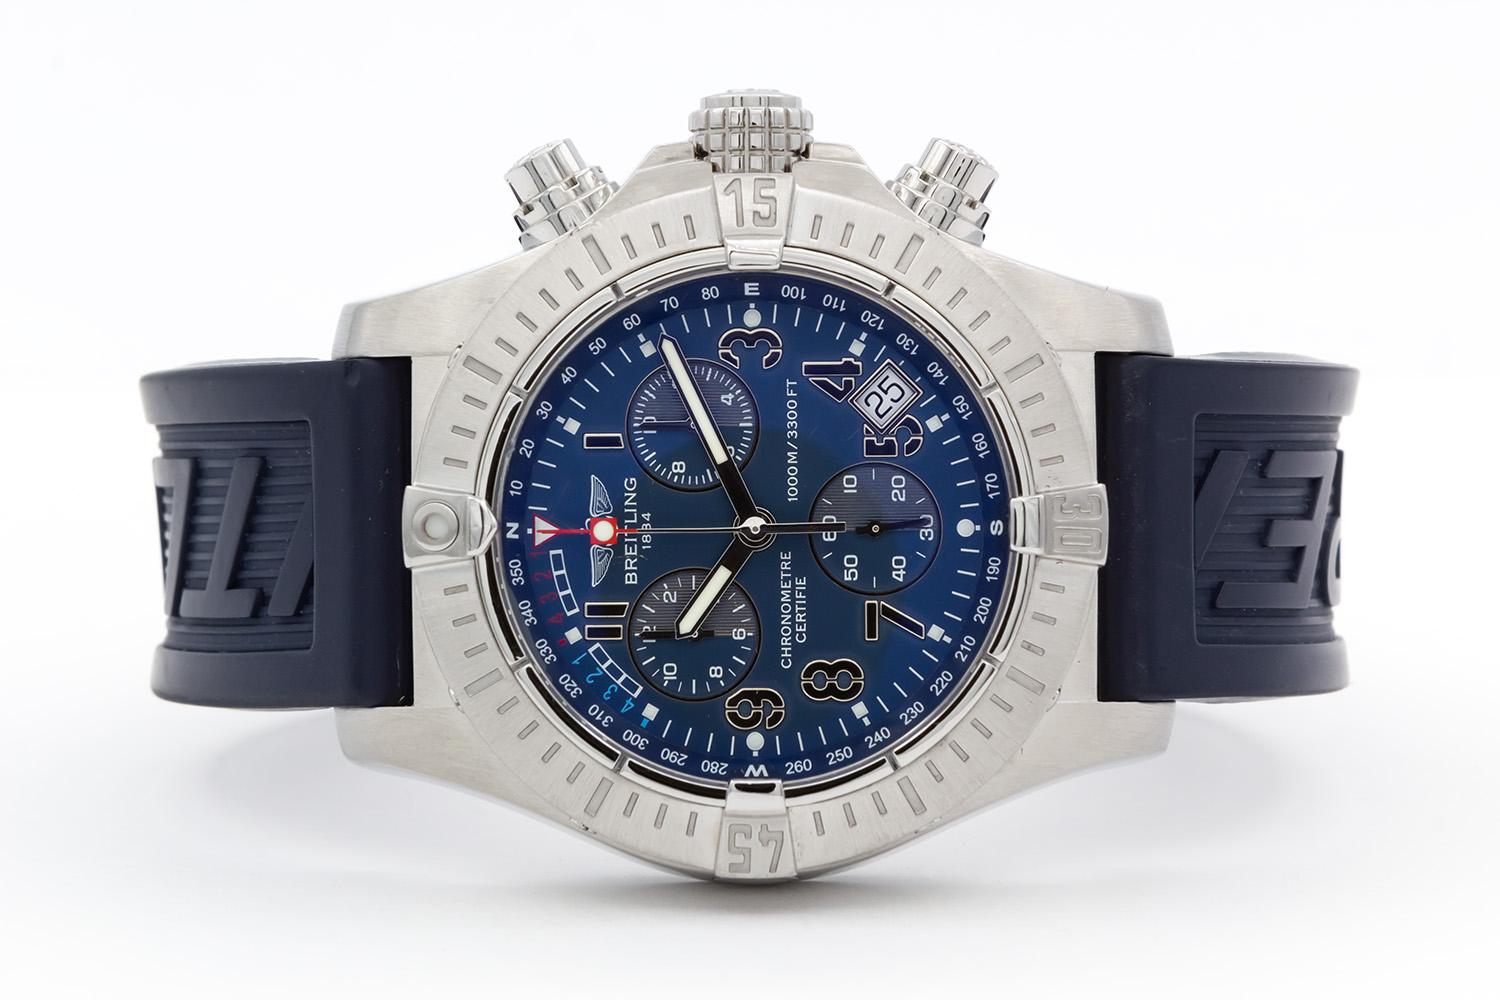 Wir freuen uns, diese Breitling Avenger Seawolf A73390 anbieten zu können, die gerade von Breitling poliert und überholt wurde. Diese Uhr verfügt über ein 45,4 mm großes Edelstahlgehäuse, ein blaues Breitling-Kautschukarmband, ein schönes blaues